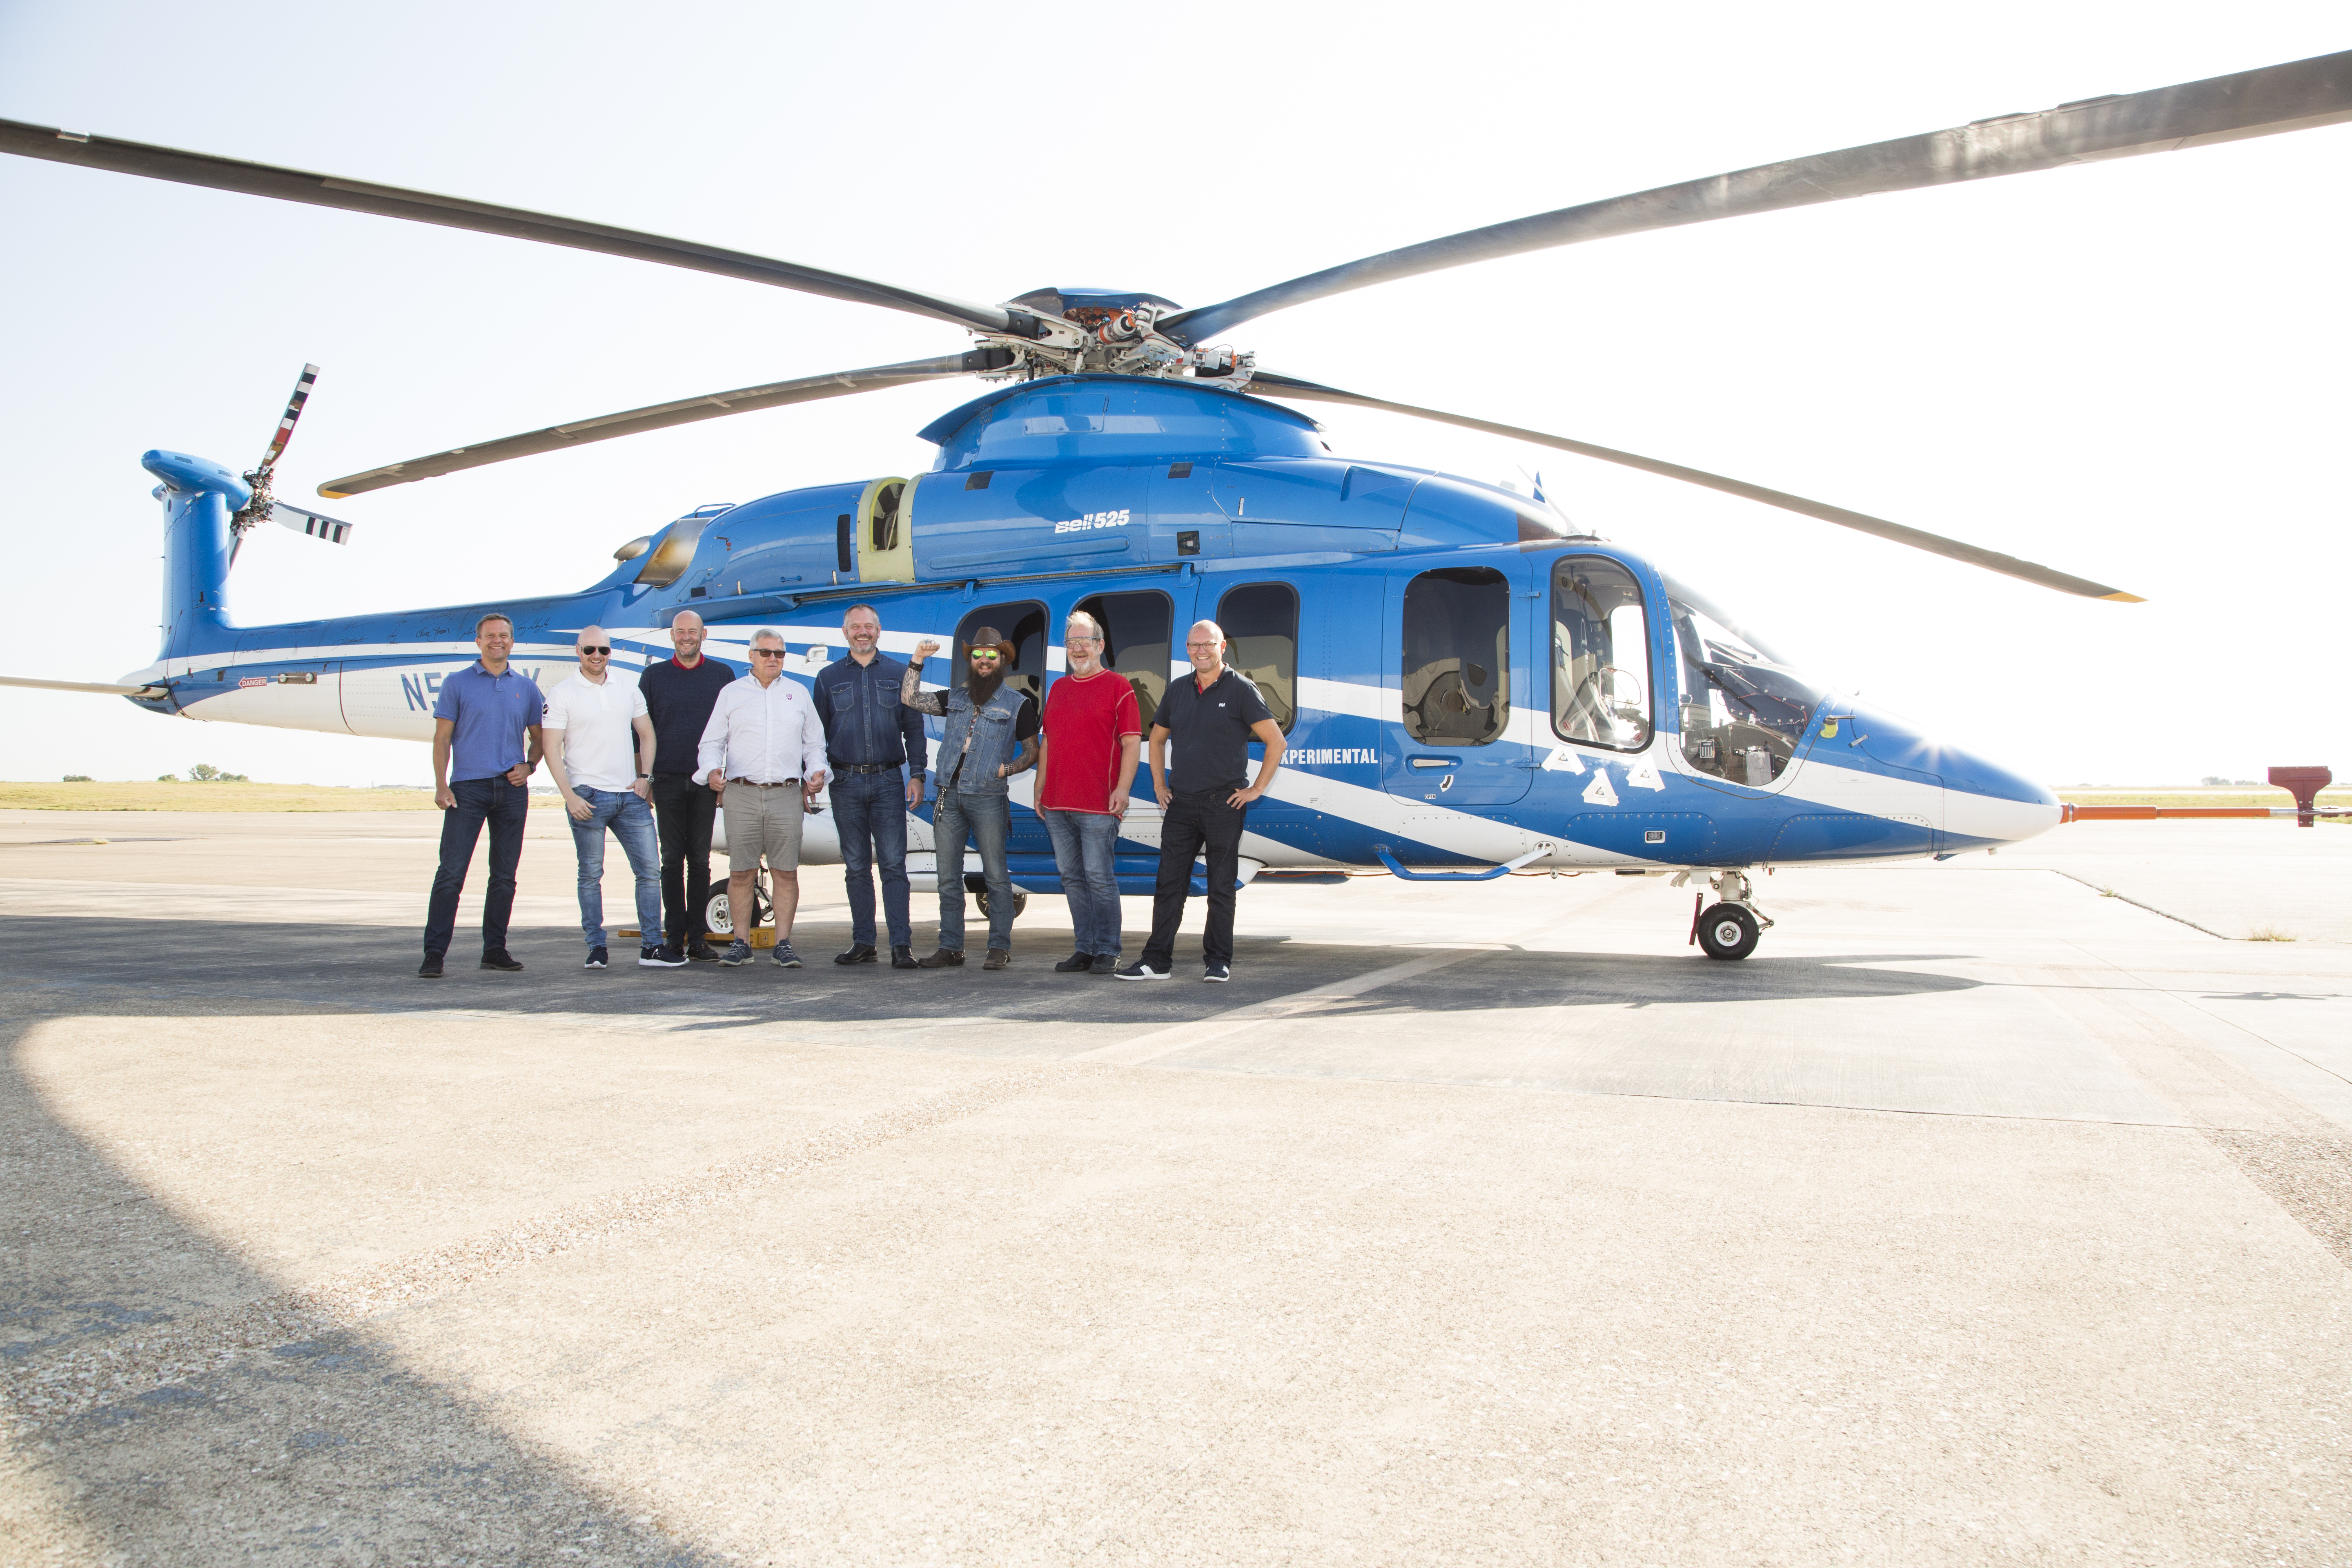 Members of the Helicopter Committee were among the first to test-fly Bell 525. From the left: Kjetil Larsen, Tom Stian Beitland, Erik Hamremoen, Ketil Karlsen, Michael Hougaard, Henrik Fjeldsbø, Frode Nirisen and Atle Espen Helgesen. Photo: Bell